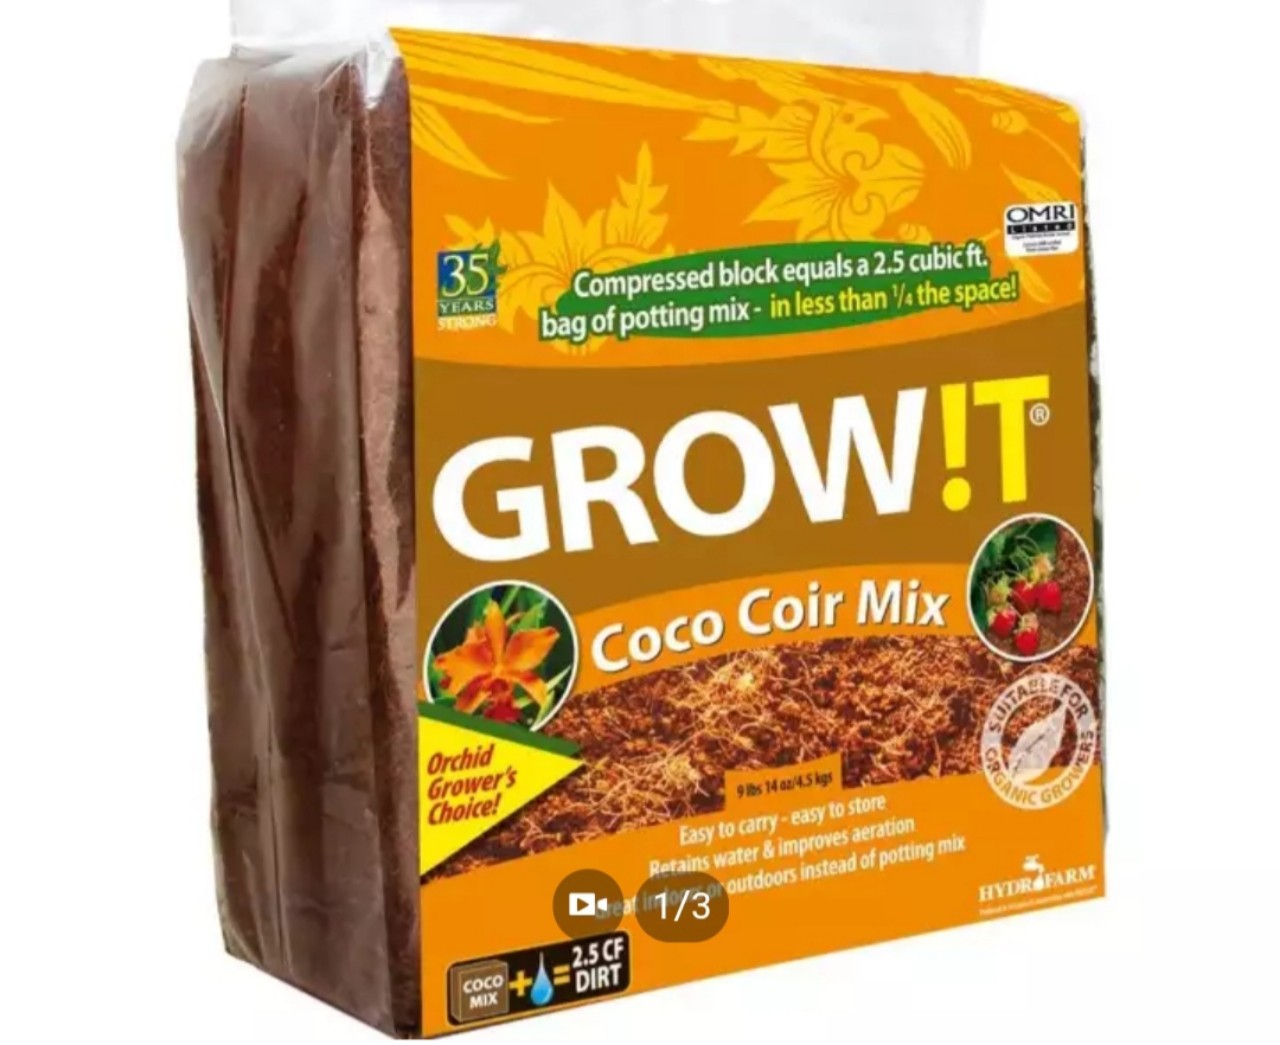 Mụn dừa Coco Coir Mix Grow!t